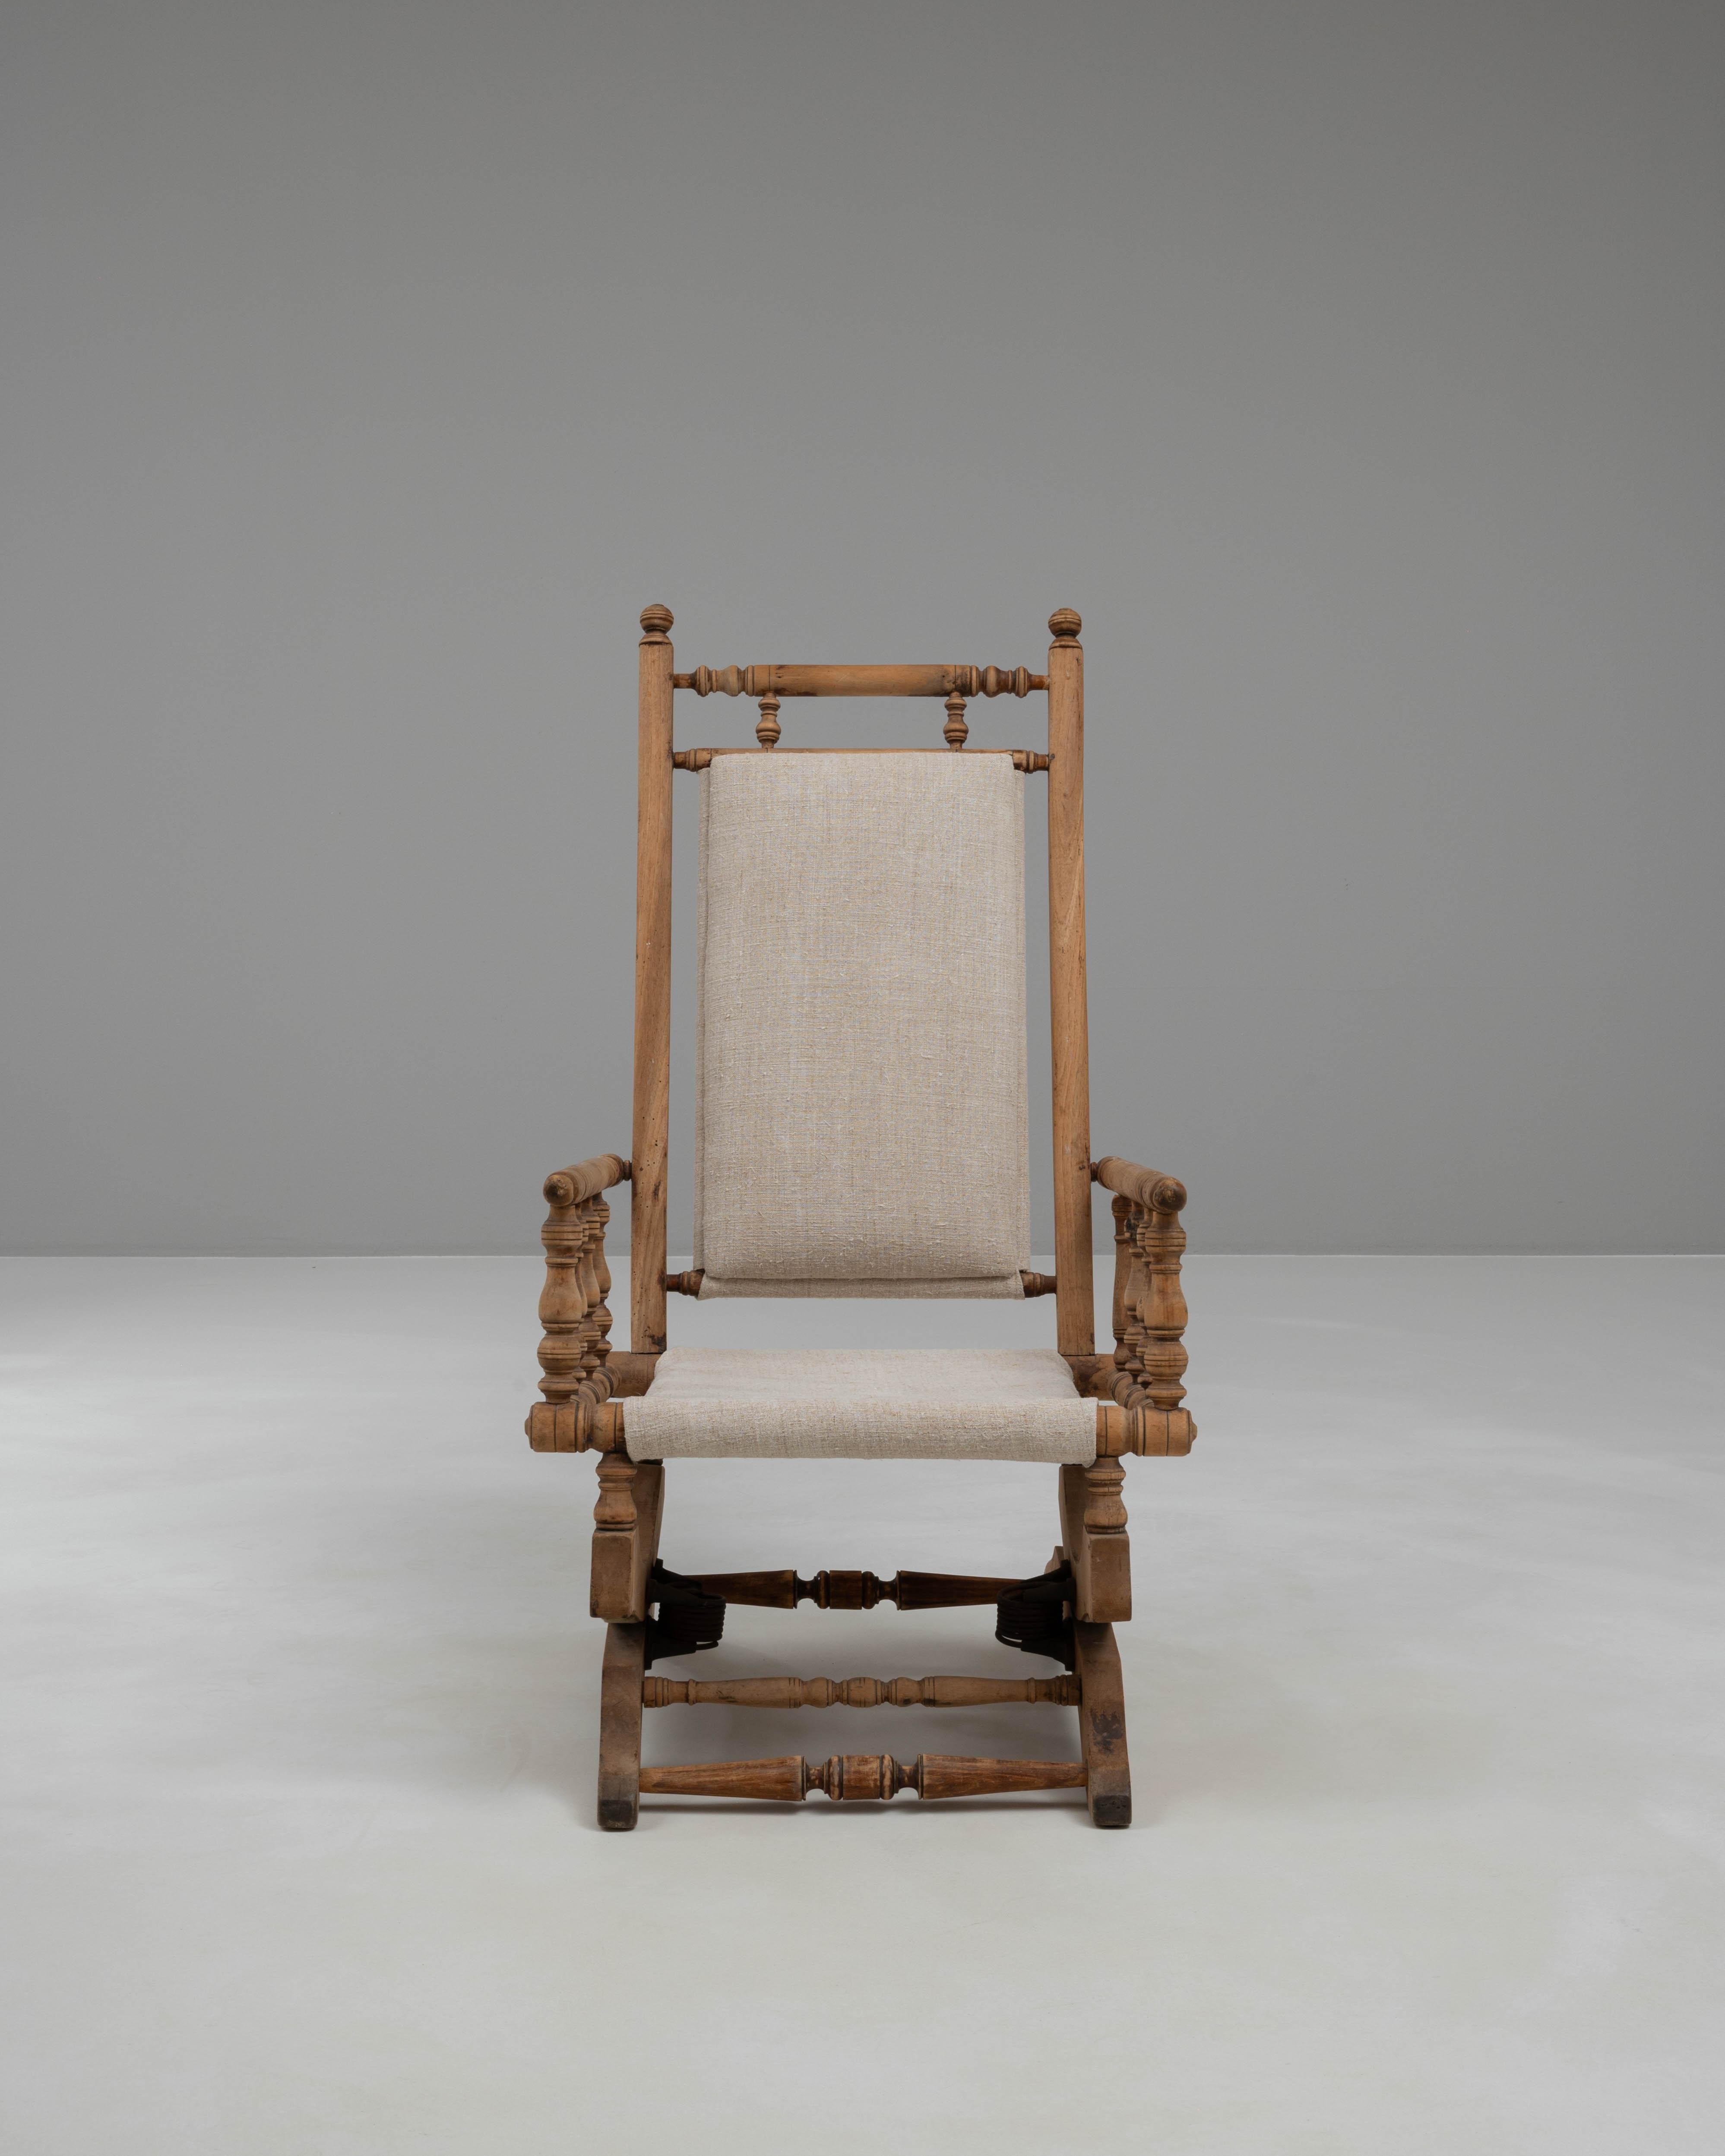 Bringen Sie zeitlose Eleganz und einen Hauch von nostalgischem Charme in Ihren Wohnbereich mit diesem exquisiten französischen Holz-Schaukelsessel aus dem Jahr 1900. Der mit viel Liebe zum Detail gefertigte Stuhl verfügt über einen robusten